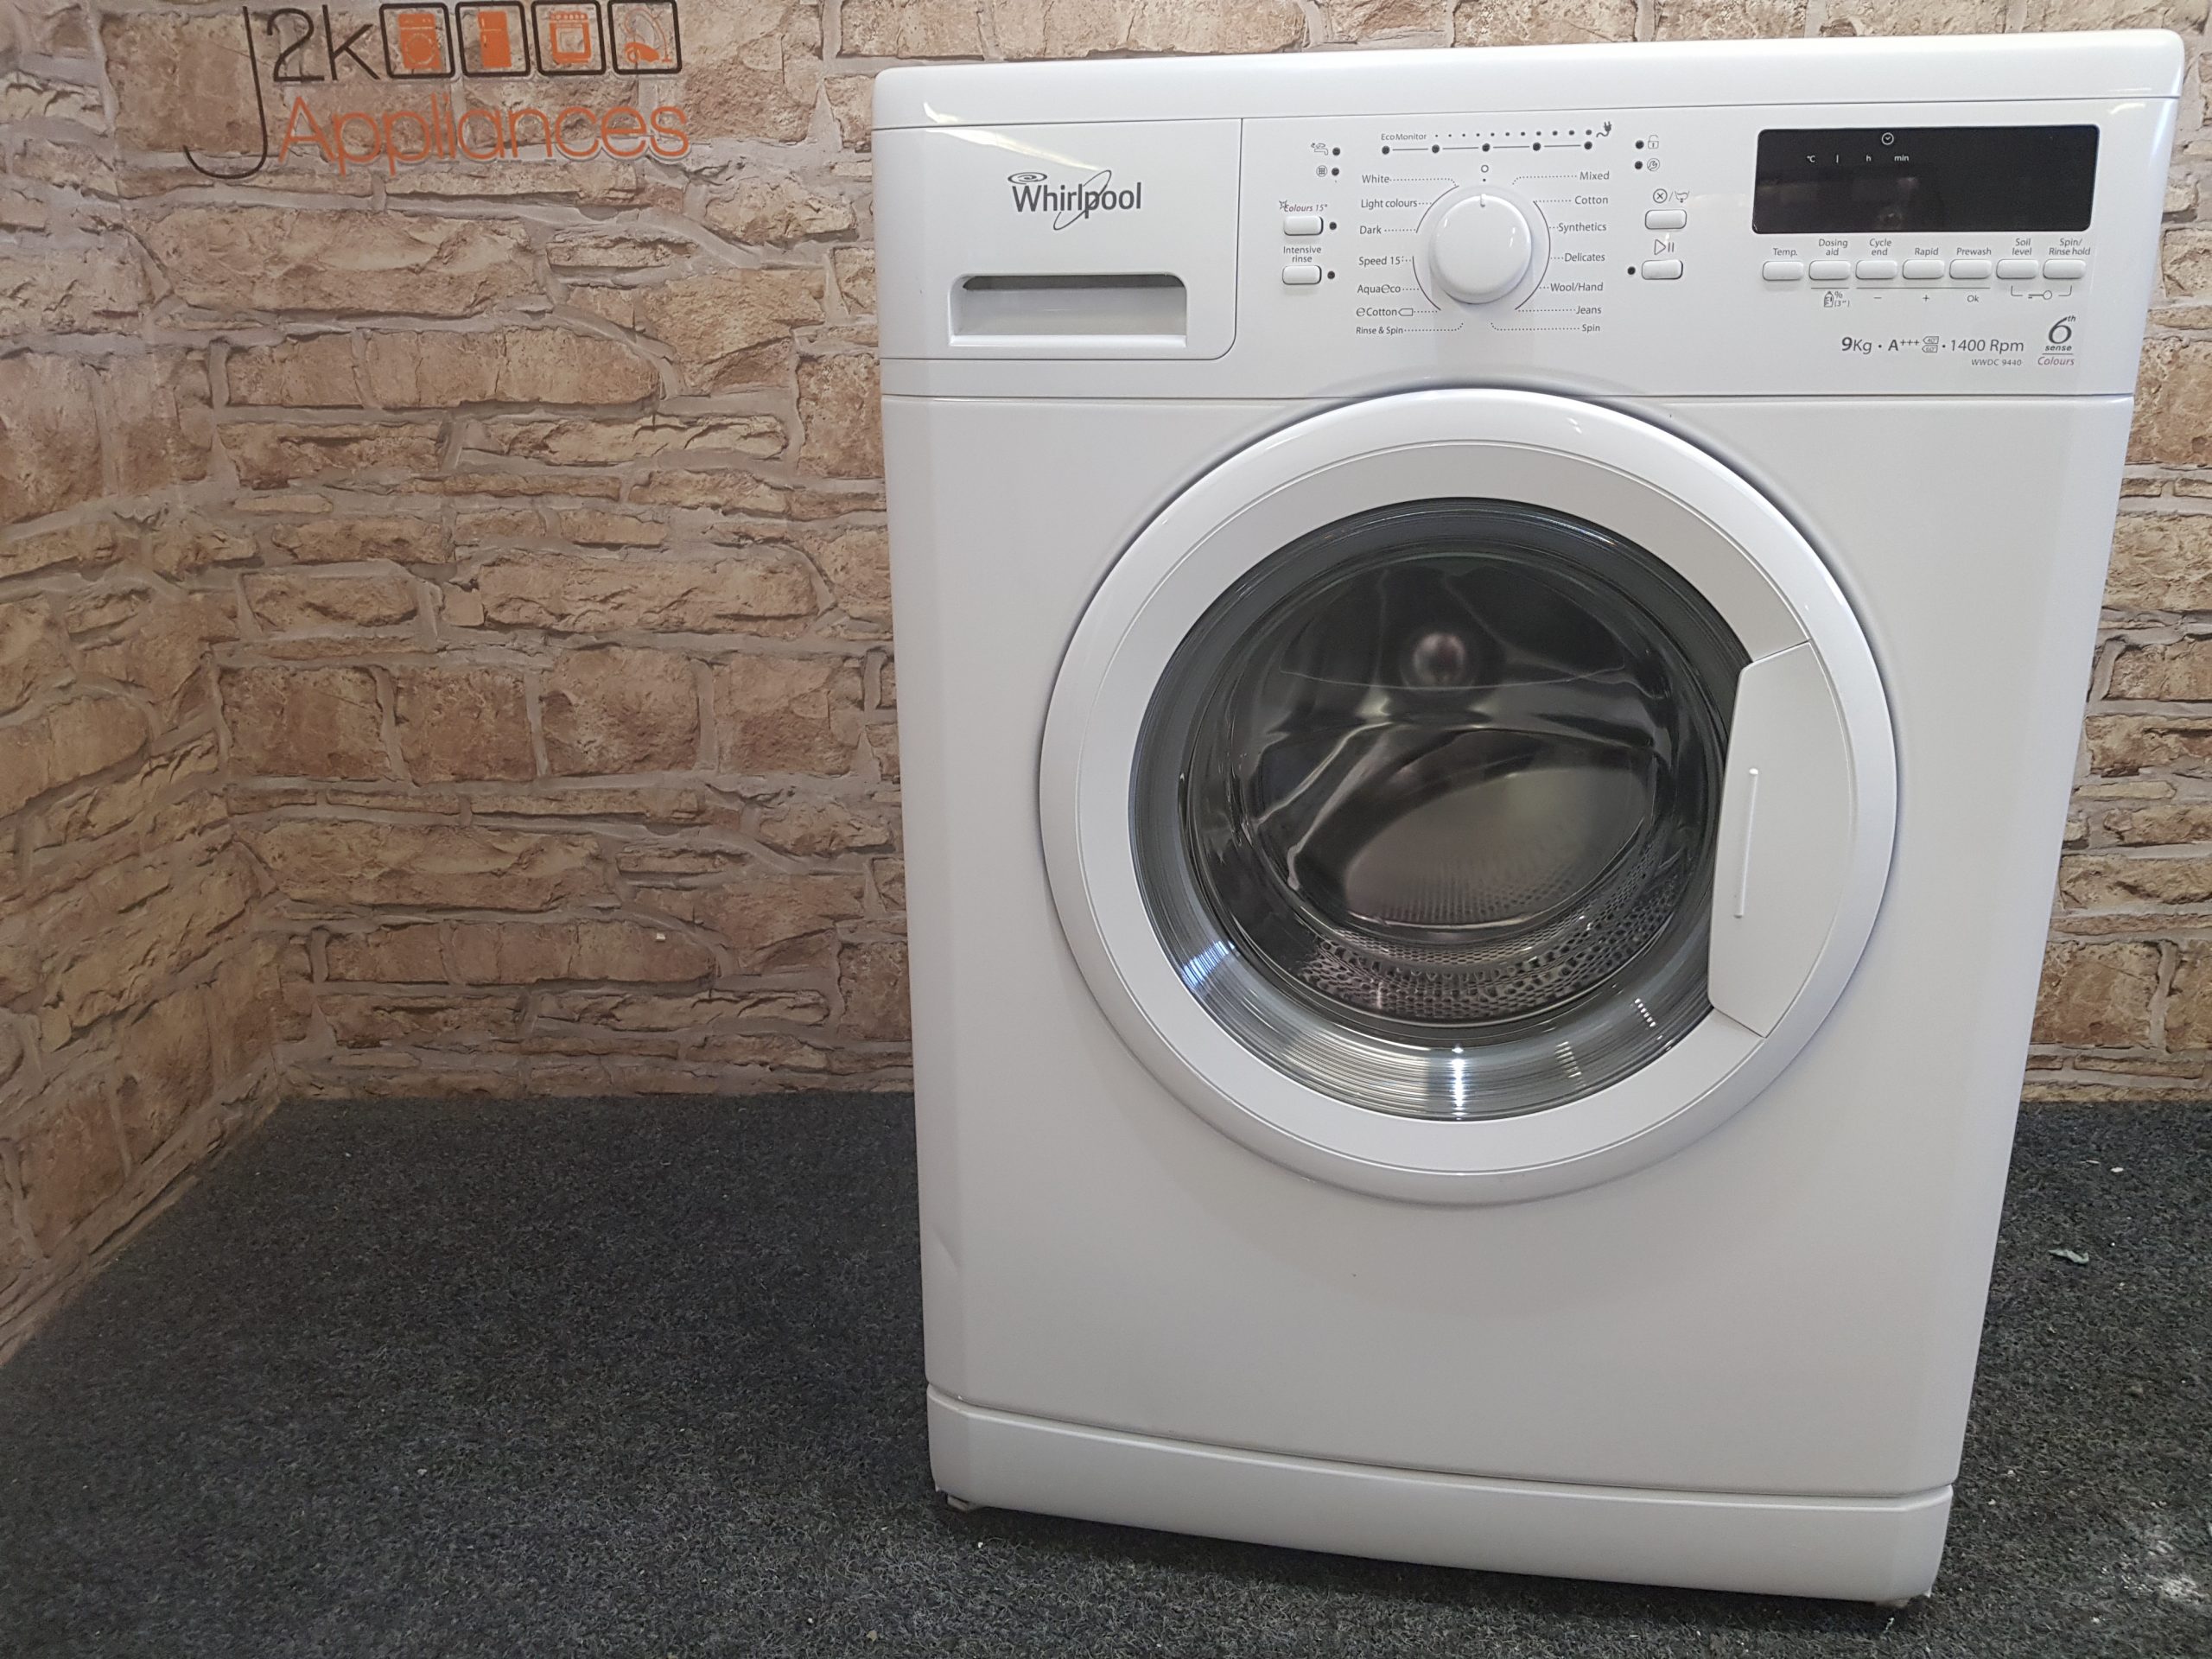 wirlpool washing machine